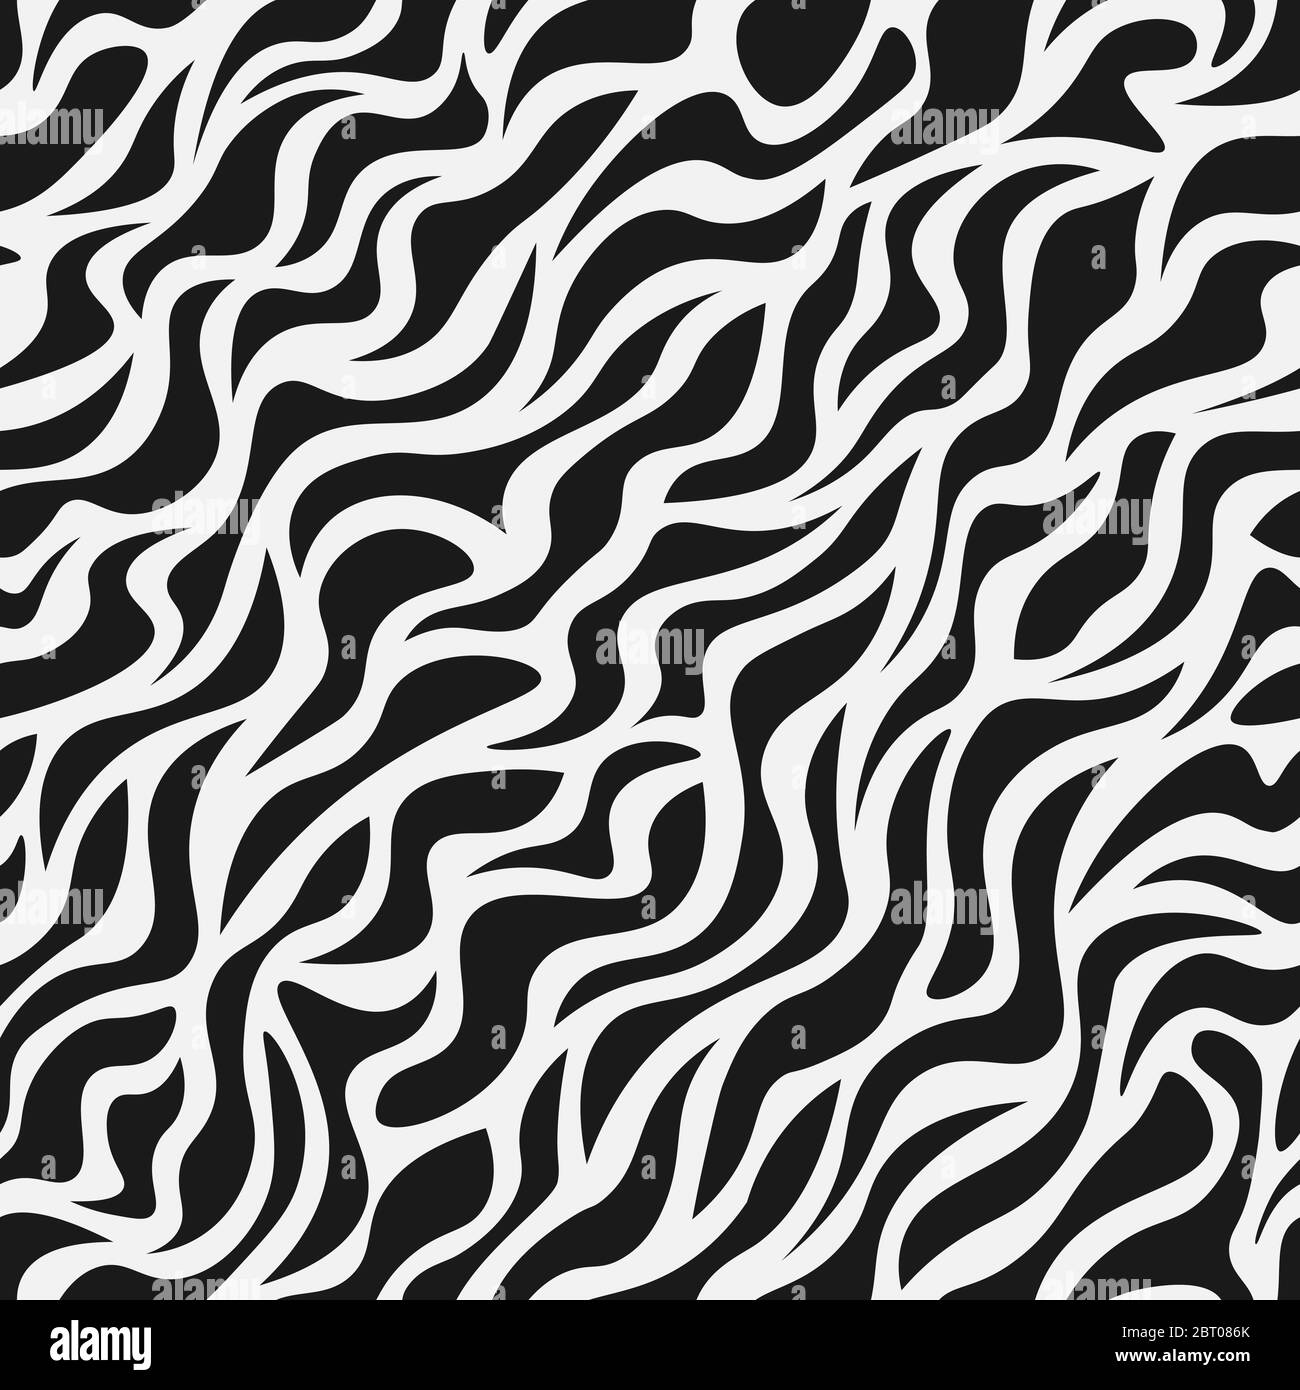 Zebra Stripes Seamless Pattern. Zebra print, animal skin, tiger stripes  Stock Vector Image & Art - Alamy